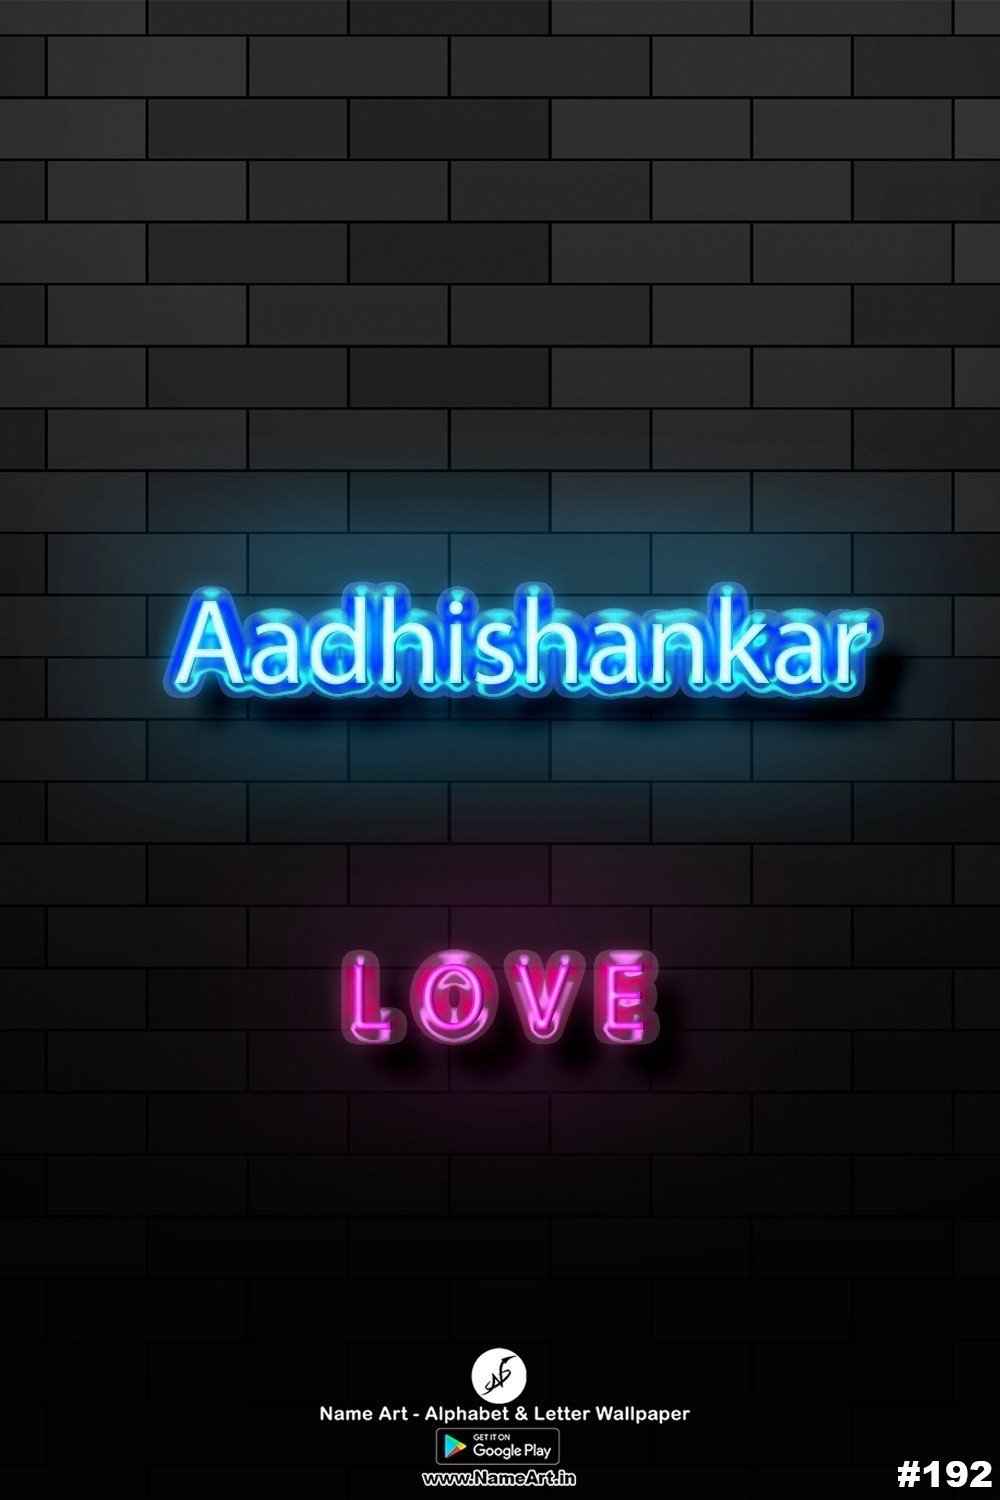 Aadhishankar | Whatsapp Status Aadhishankar | Happy Birthday Aadhishankar !! | New Whatsapp Status Aadhishankar Images |